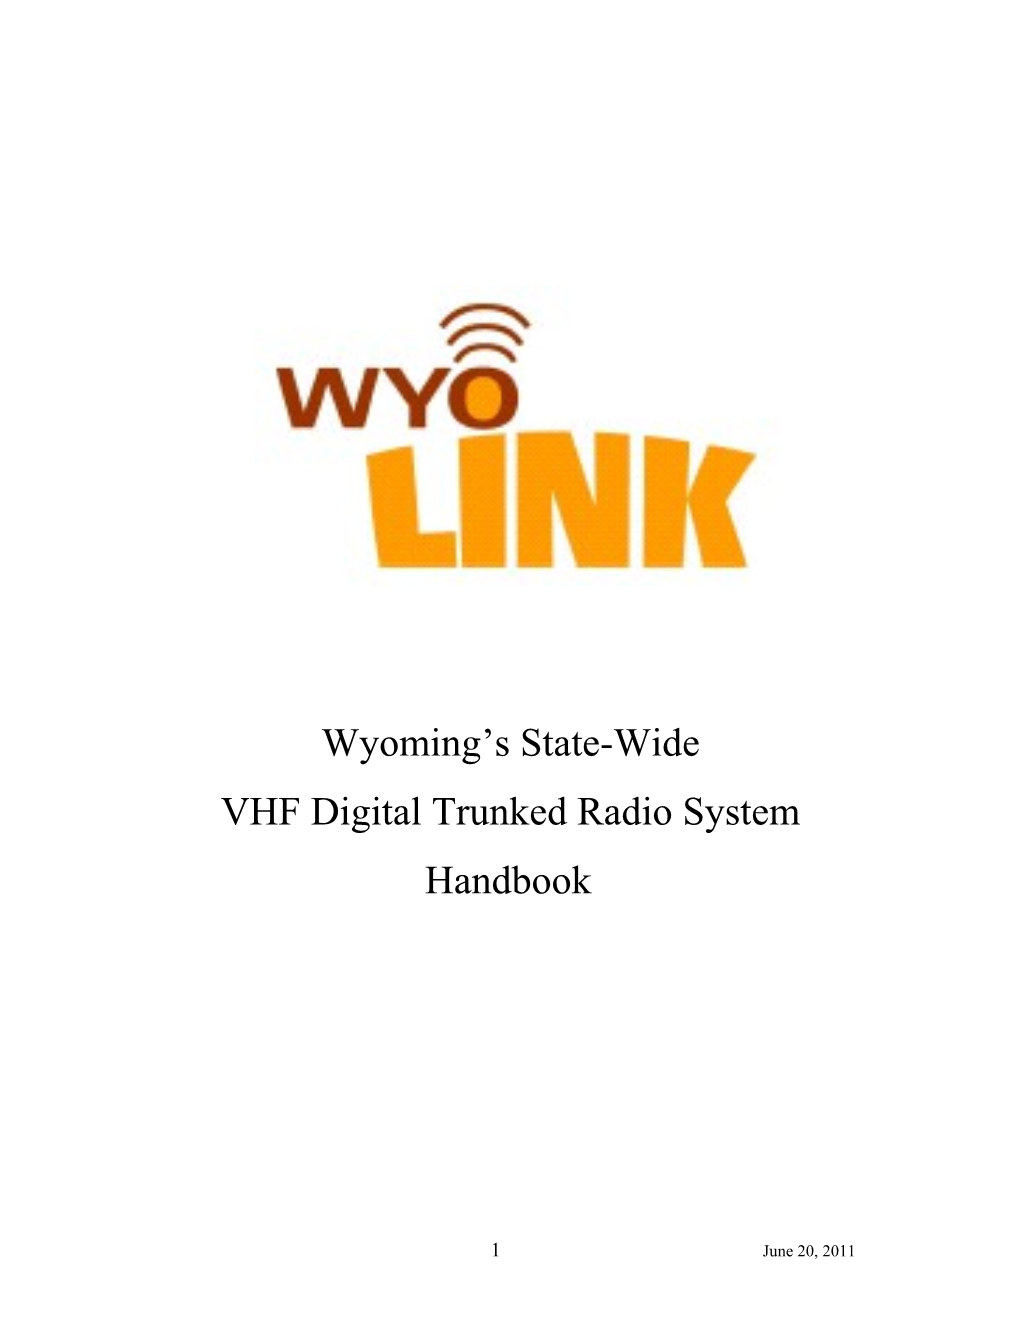 VHF Digital Trunked Radio System